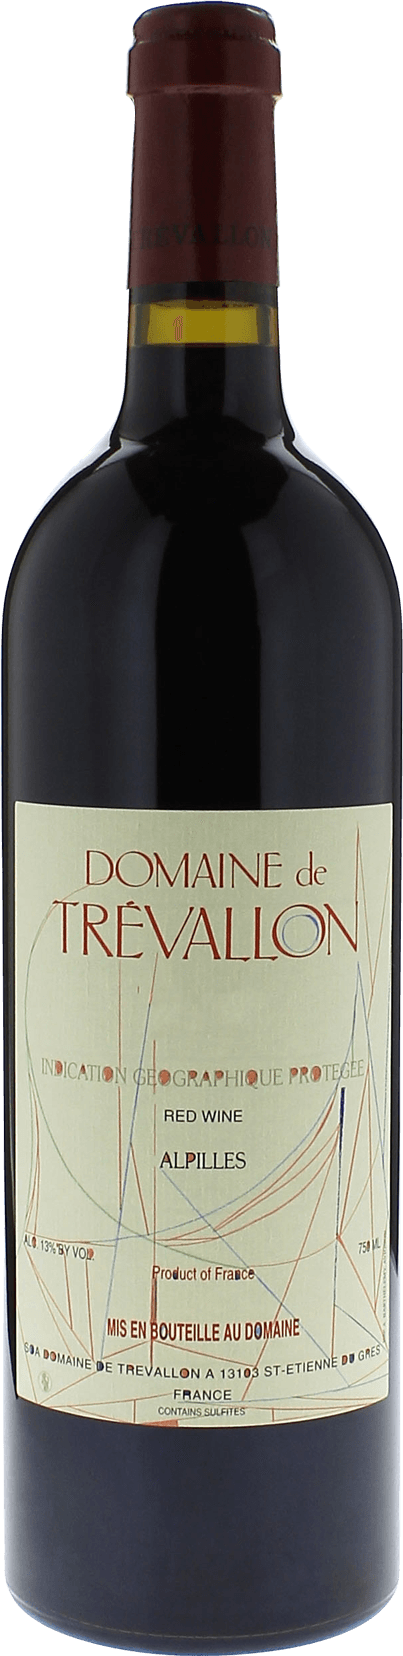 Domaine de trevallon rouge 2009  Vin de Pays, Provence